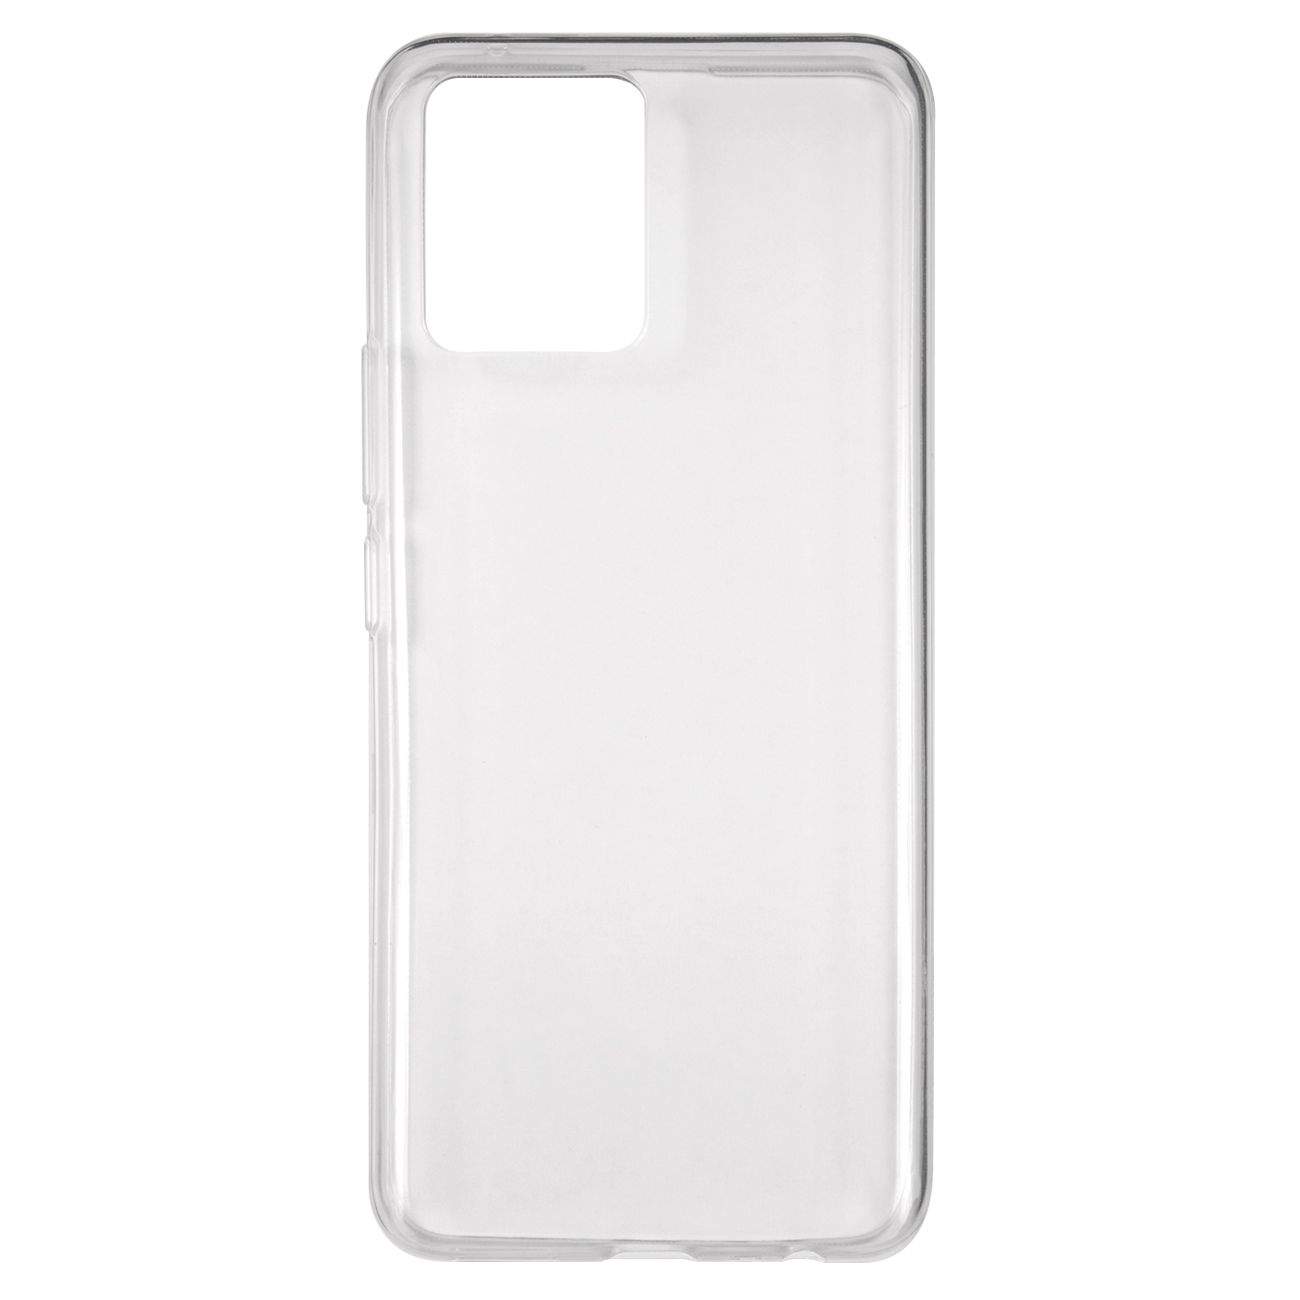 Чехол-накладка iBox Crystal для смартфона Realme 8, силикон, прозрачный (УТ000025471)